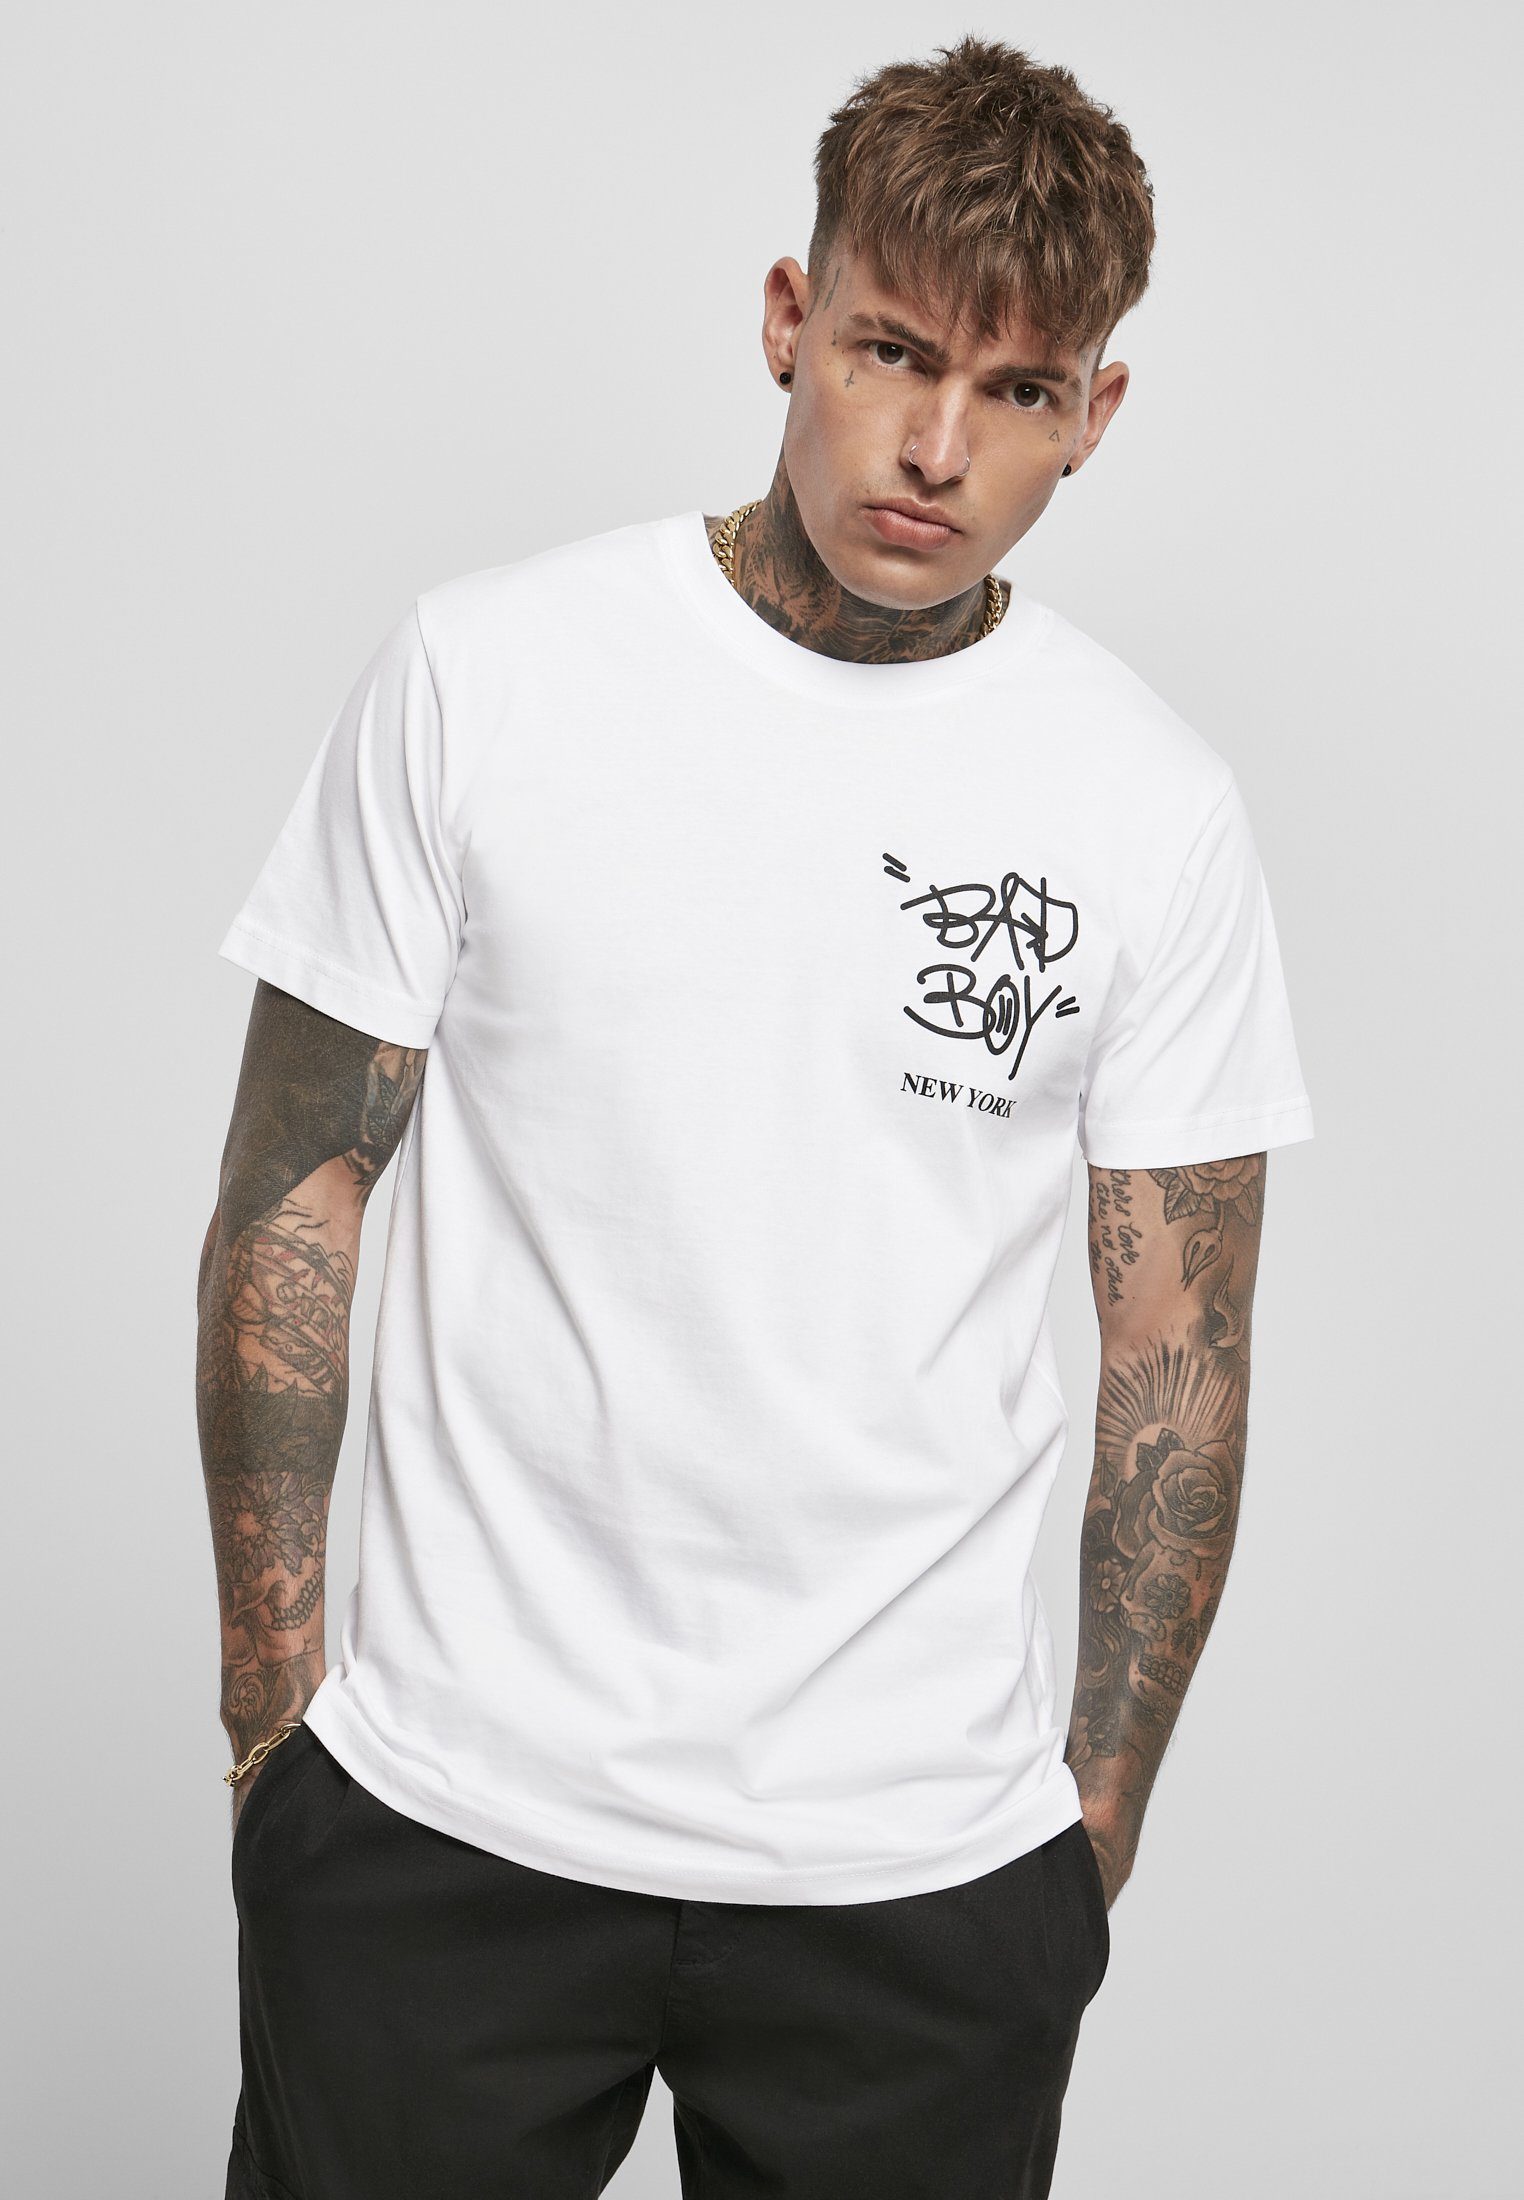 Sehr beliebt zu niedrigen Preisen MisterTee T-Shirt New (1-tlg) York Boy Herren Bad Tee